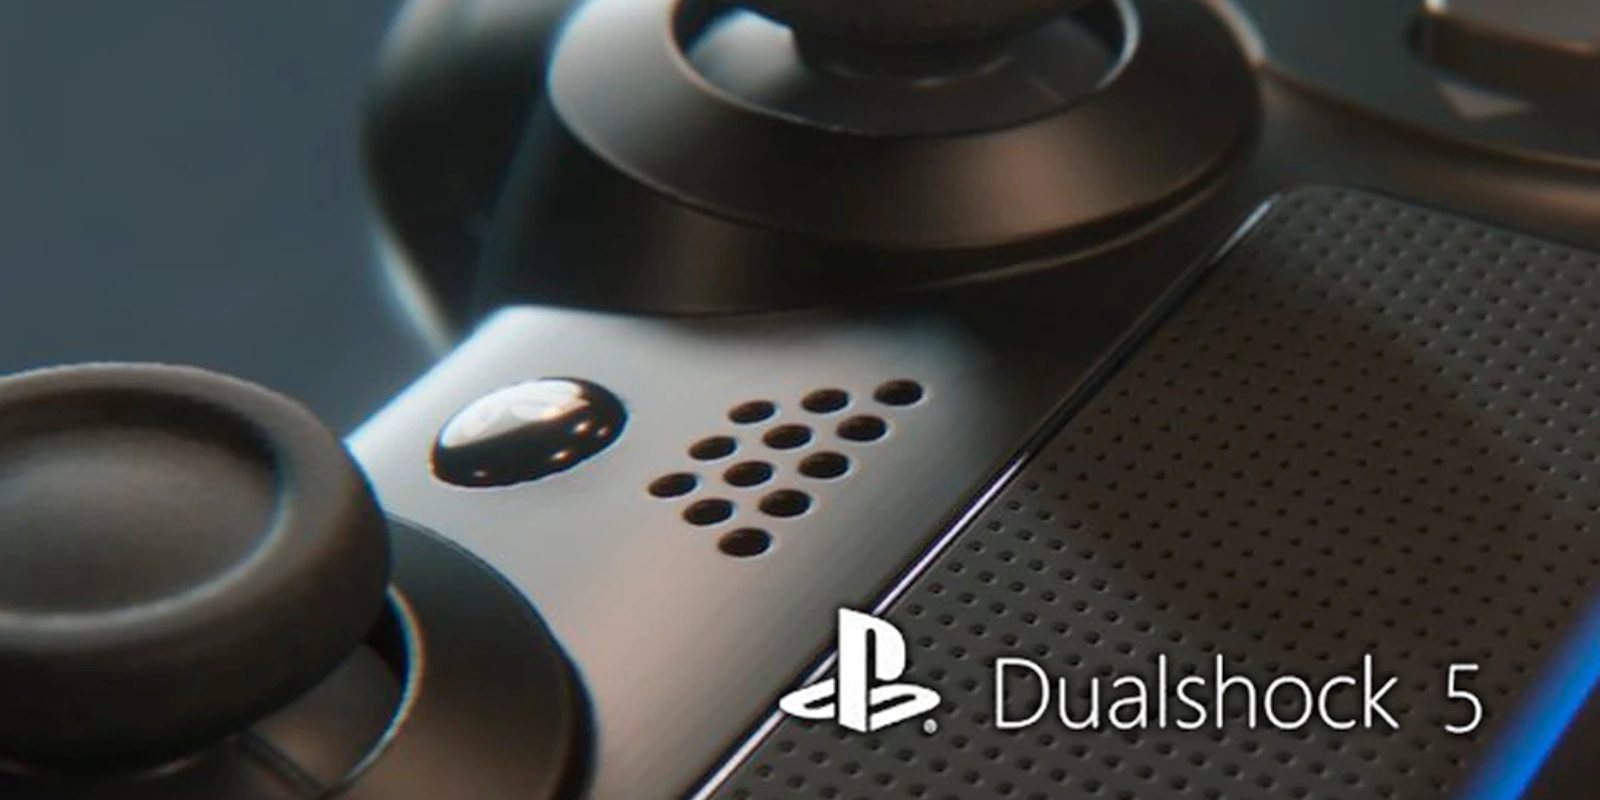 Nueva patente sugiere dos botones posteriores para el DualShock 5 de PS5